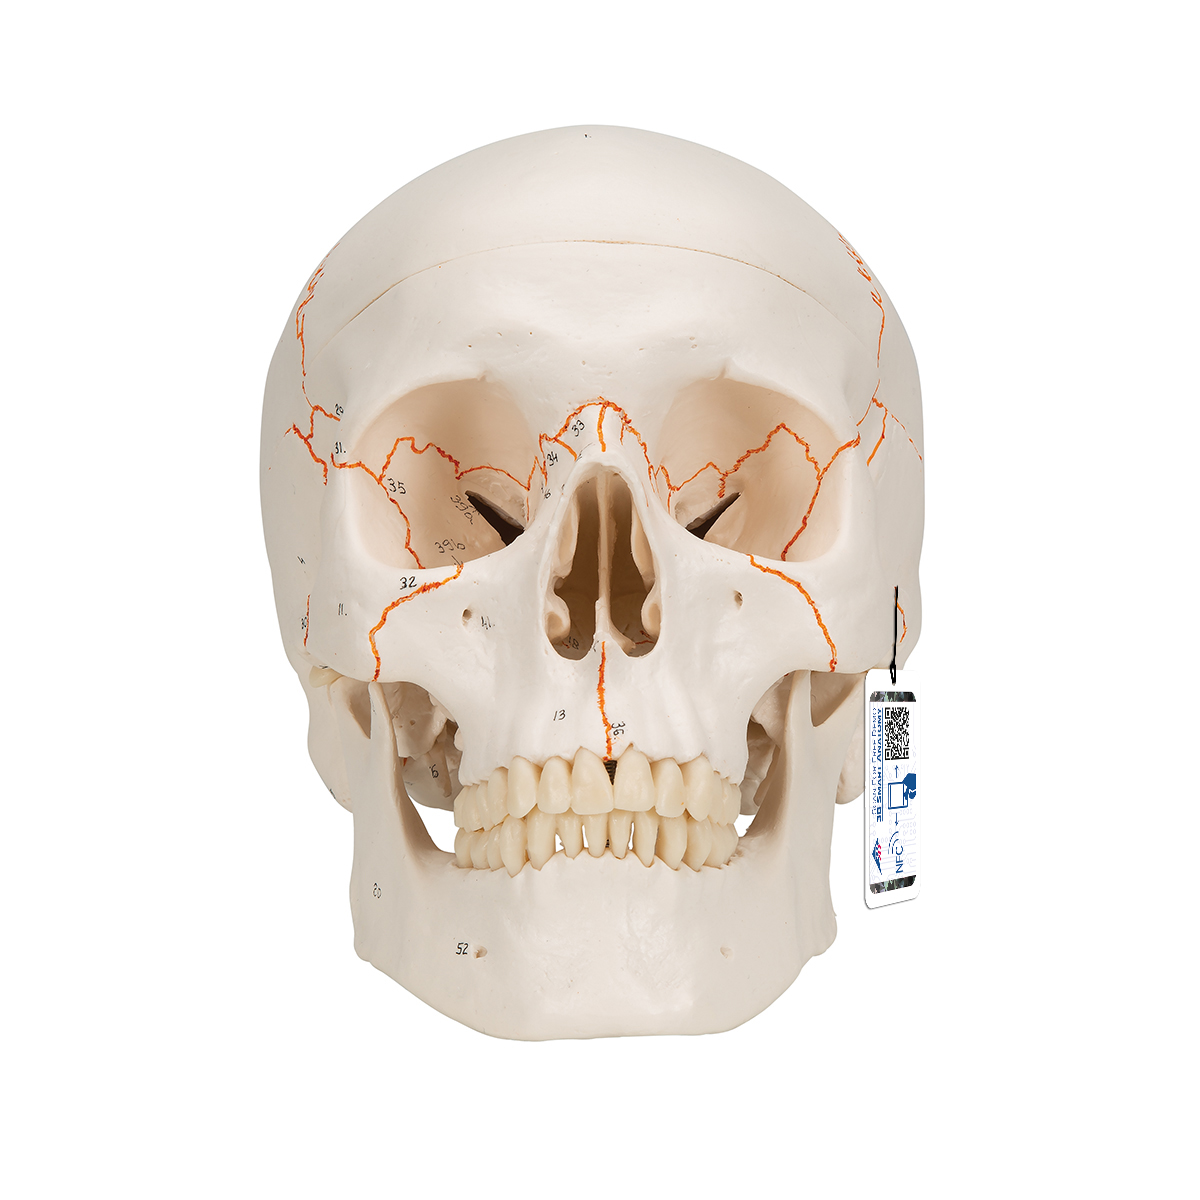 Menschliches Schädel Modell "Klassik" mit Nummerierung, 3-teilig - 3B Smart Anatomy, Bestellnummer 1020165, A21, 3B Scientific